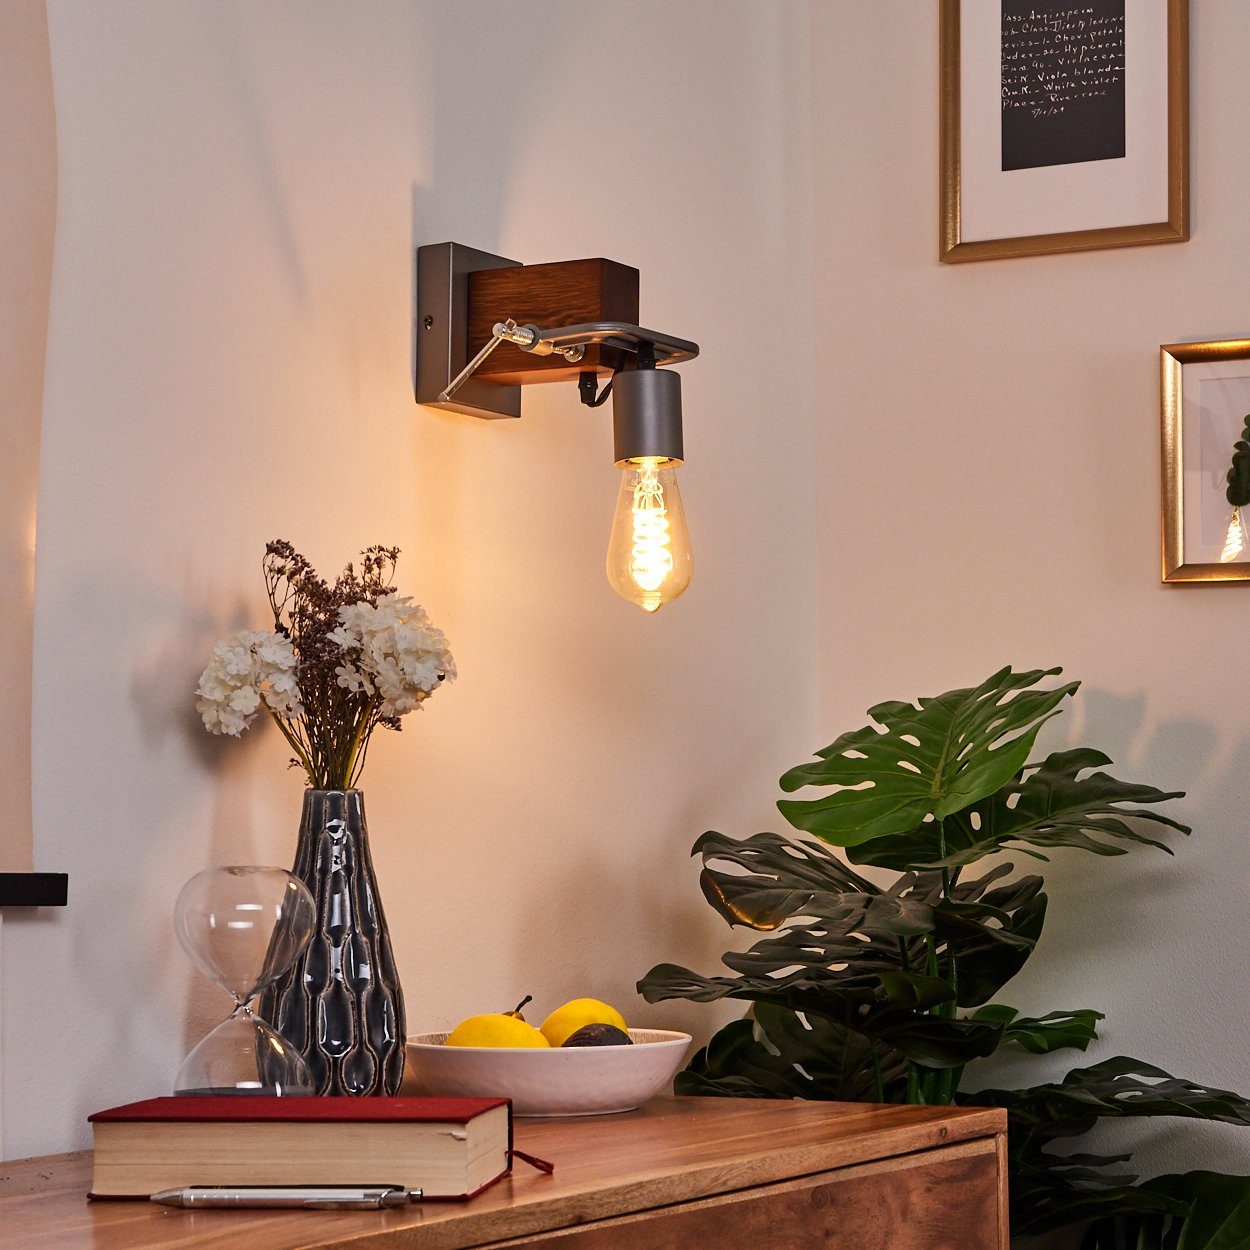 hofstein Wandleuchte »Zinga« Wandlampe Metall grau und Holz, Retro/Vintage Look Zimmerlampe 1-flammig, 1 x E27 max. 60 Watt, für LED Leuchtmittel geeignet